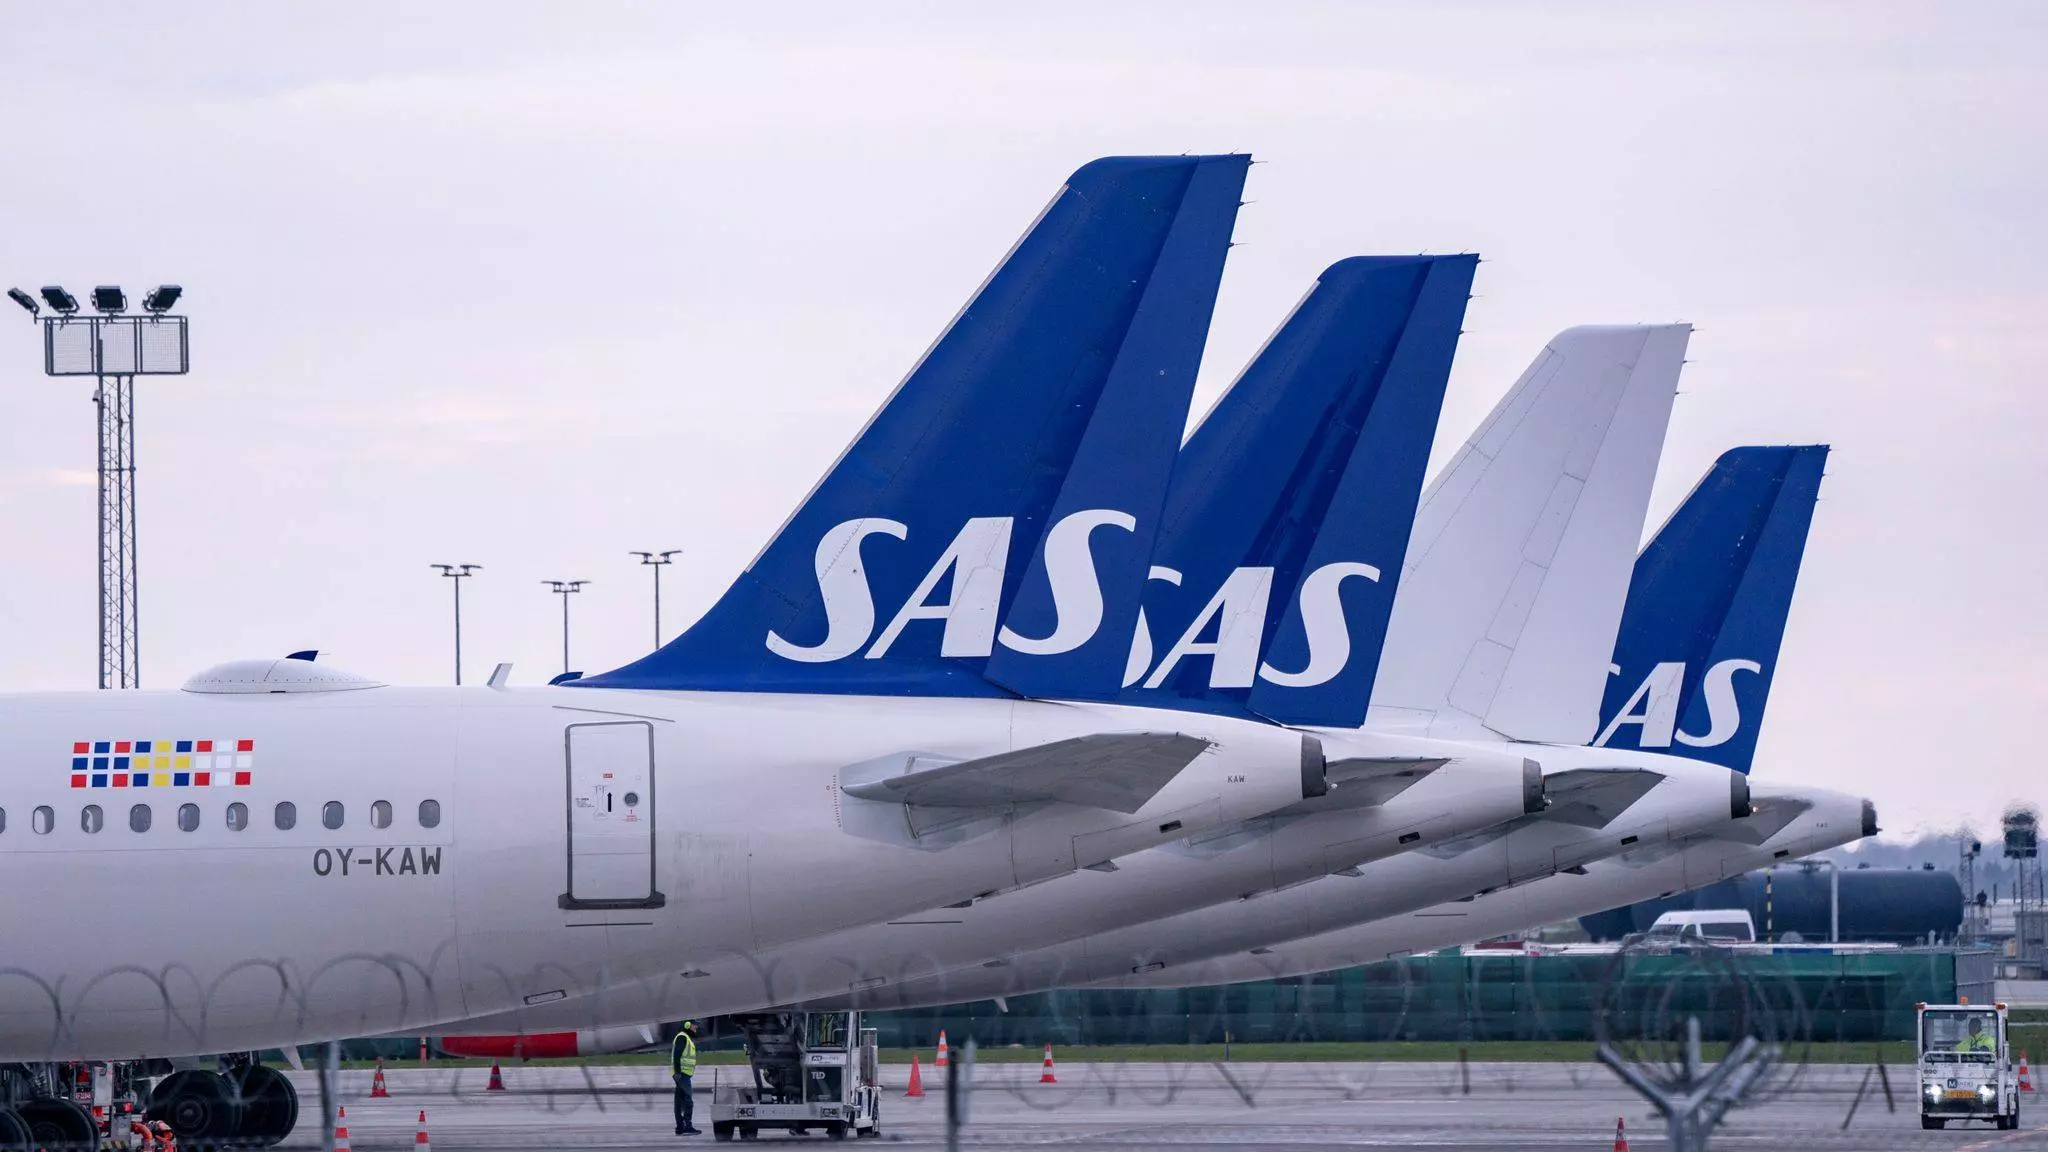 Sas scandinavian airlines - отзывы пассажиров 2017-2018 про авиакомпанию сас - скандинавские авиалинии - страница №2